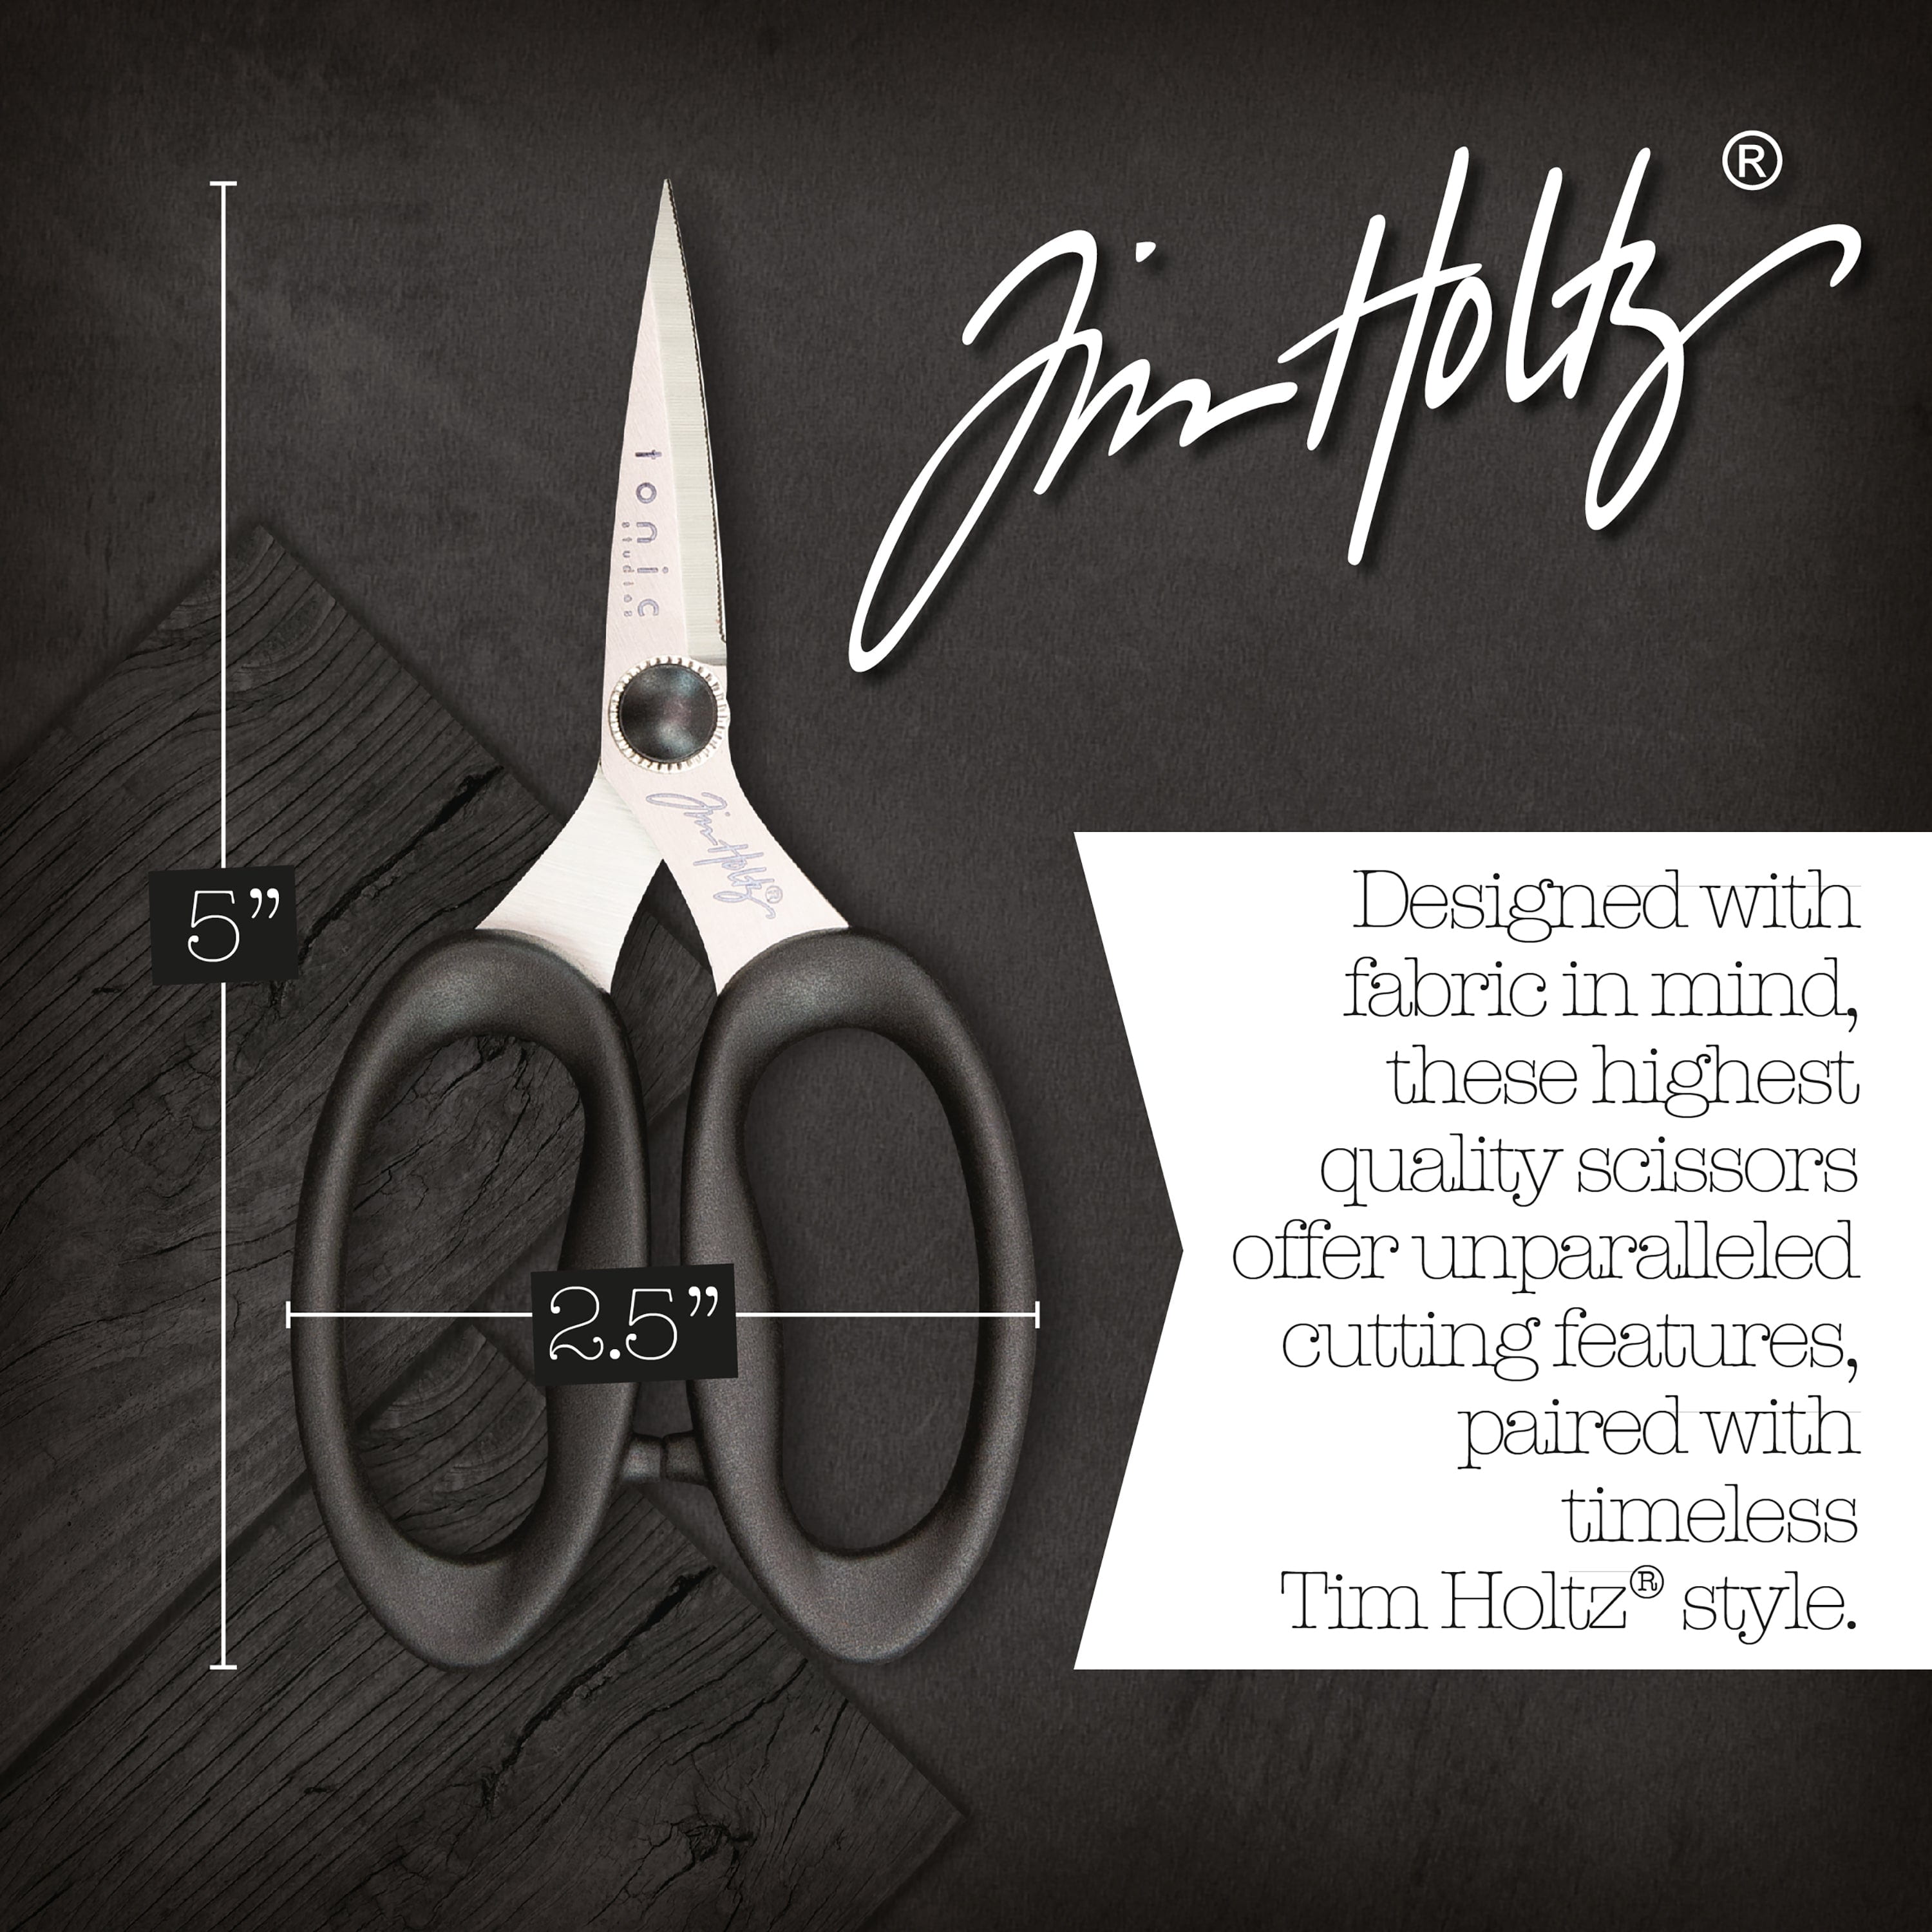 Tim Holtz 5 Haberdashery Scissors